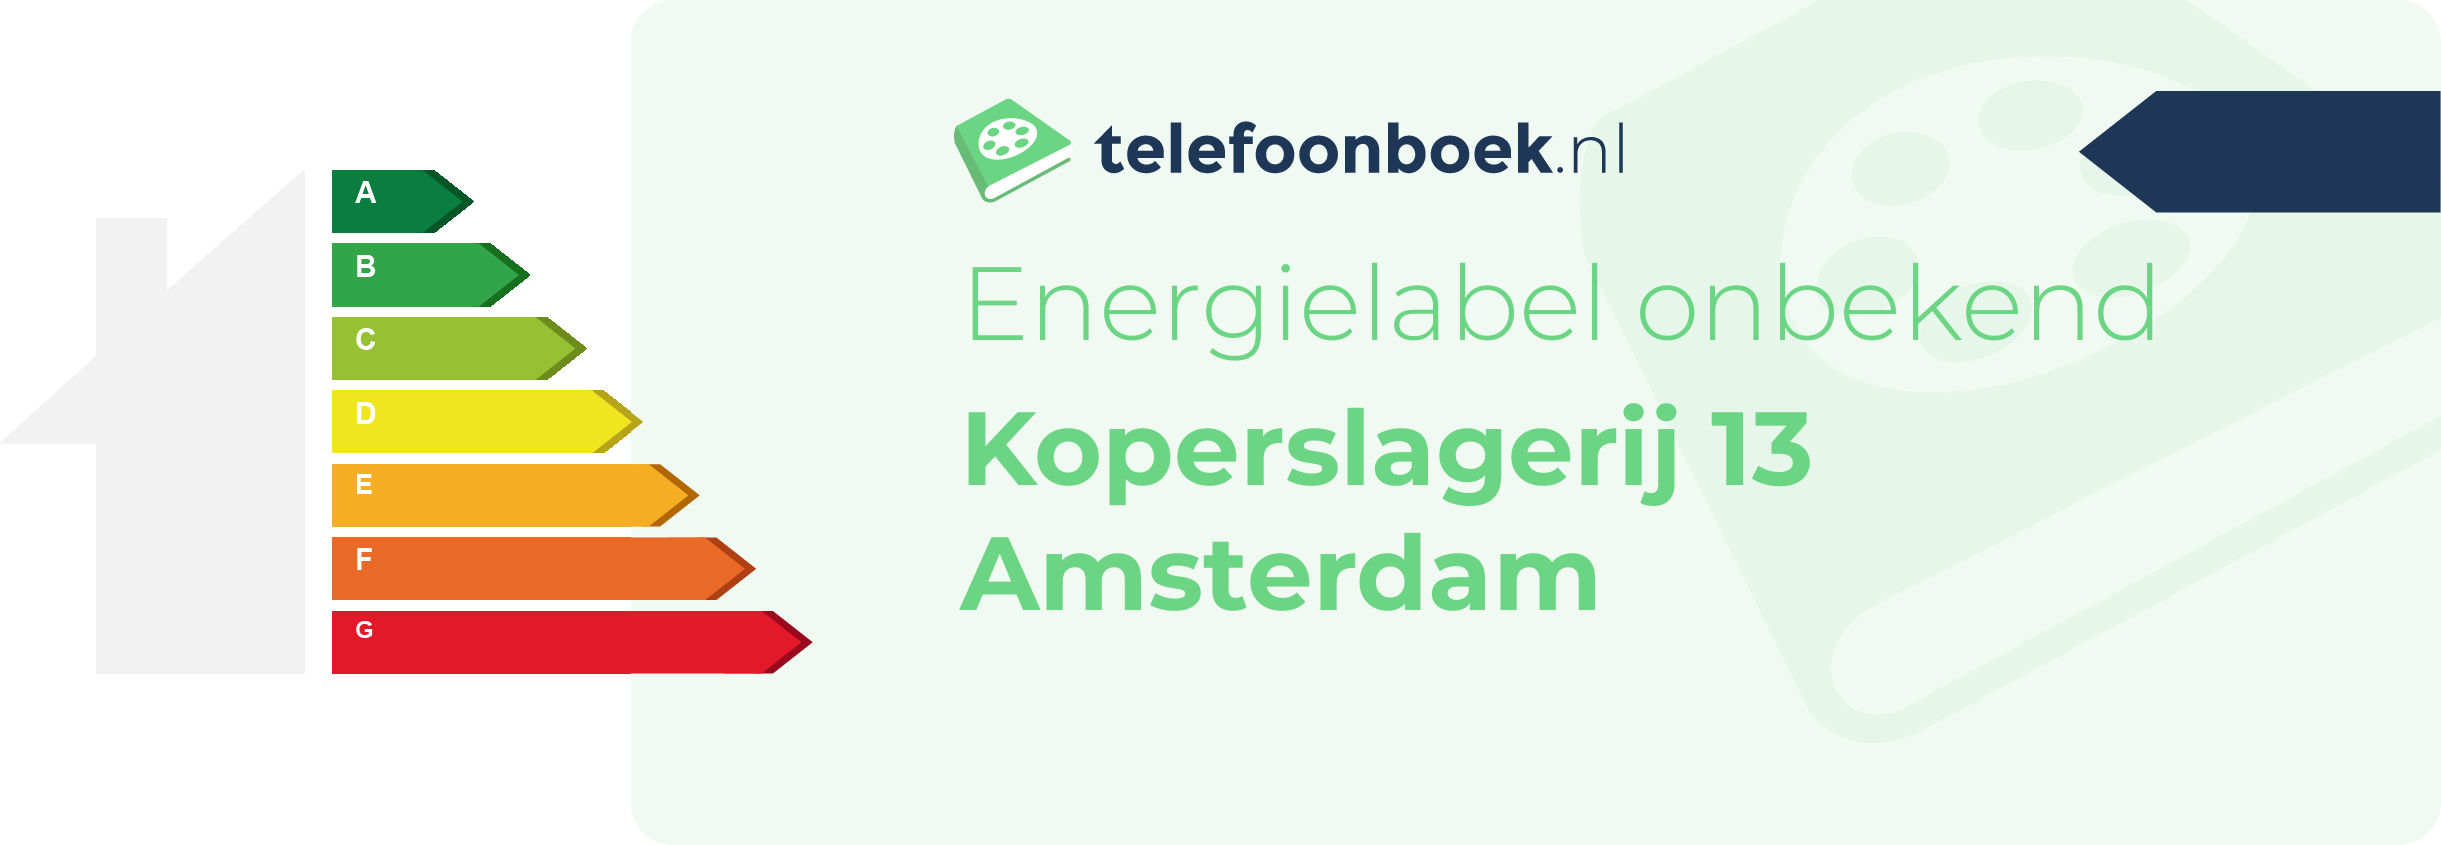 Energielabel Koperslagerij 13 Amsterdam